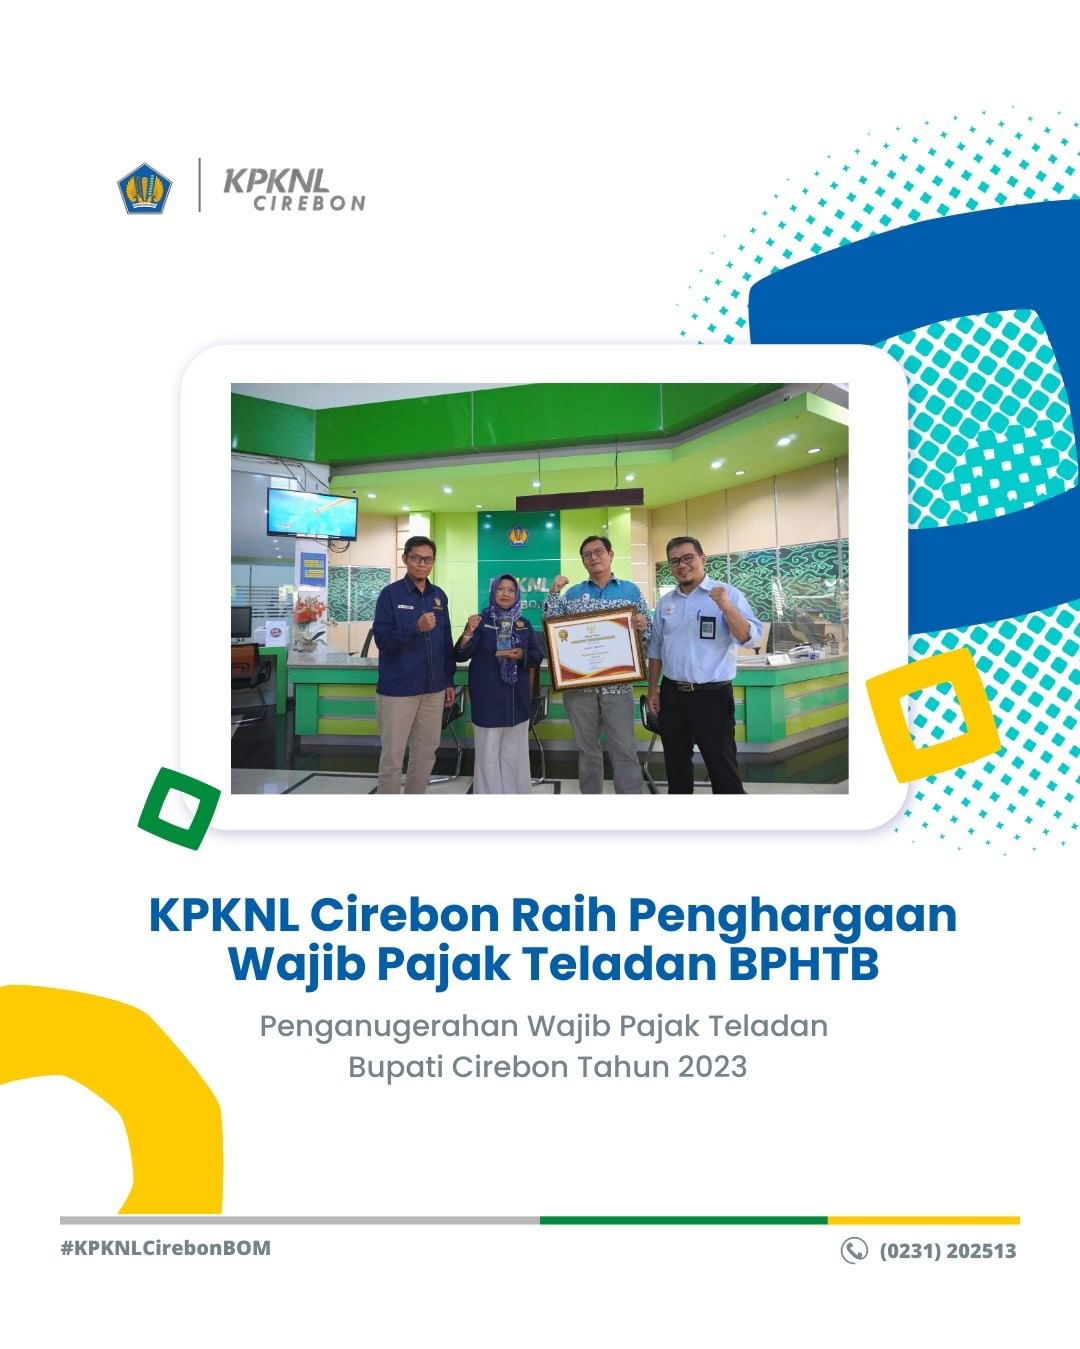 KPKNL Cirebon Raih Penghargaan Wajib Pajak Teladan BPHTB